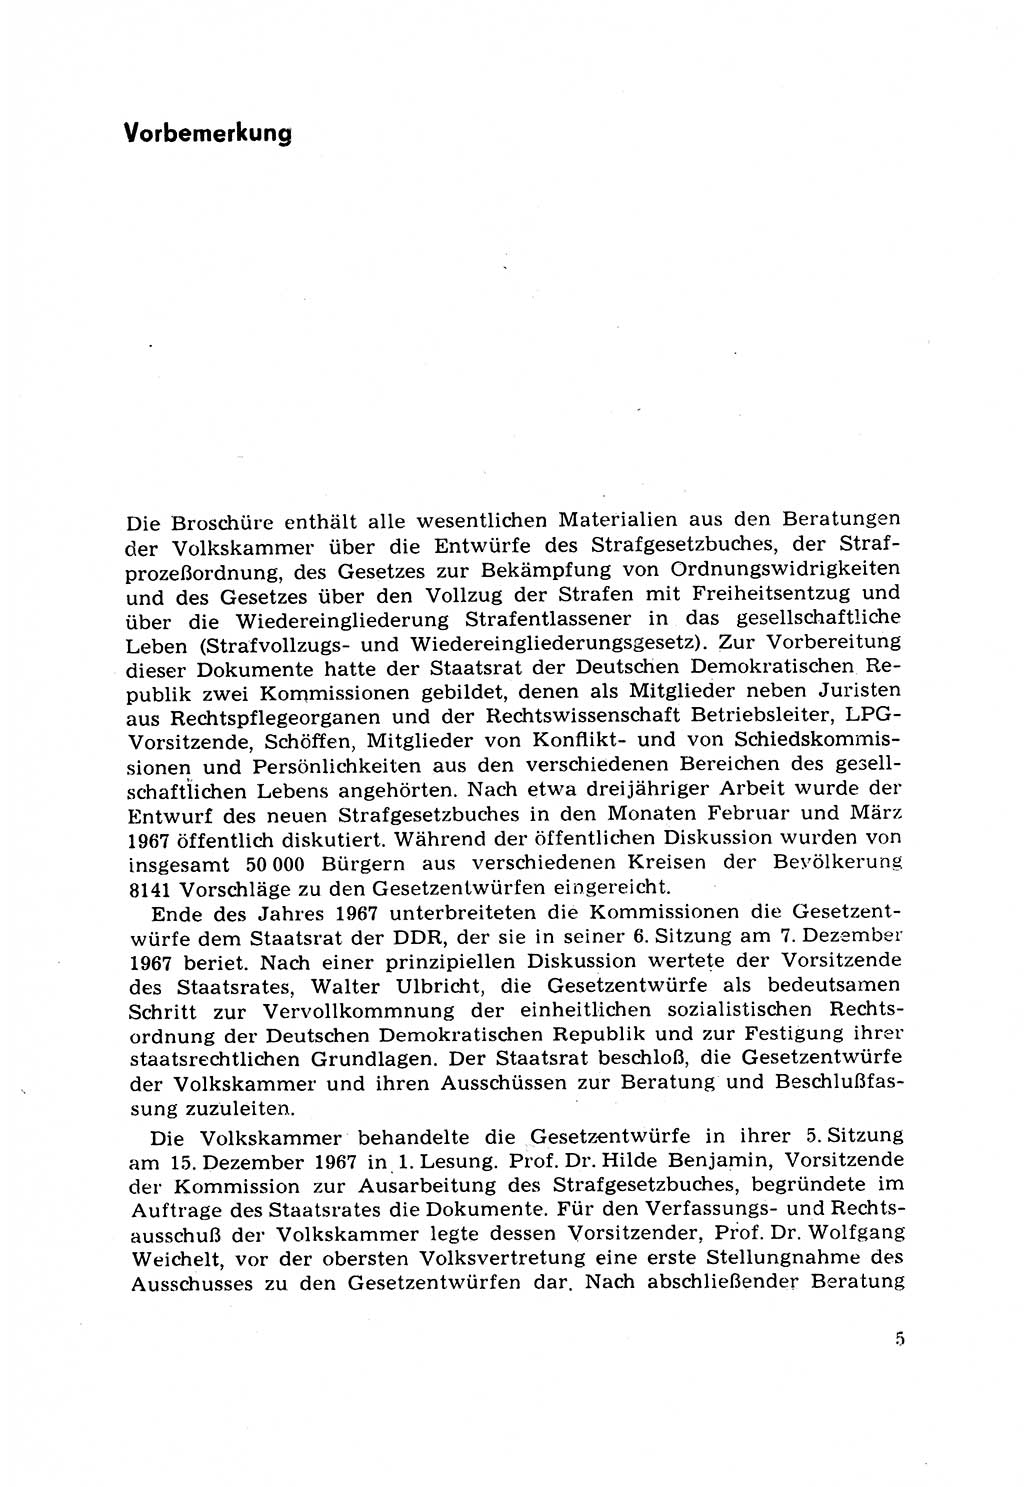 Strafrecht [Deutsche Demokratische Republik (DDR)] 1968, Seite 5 (Strafr. DDR 1968, S. 5)